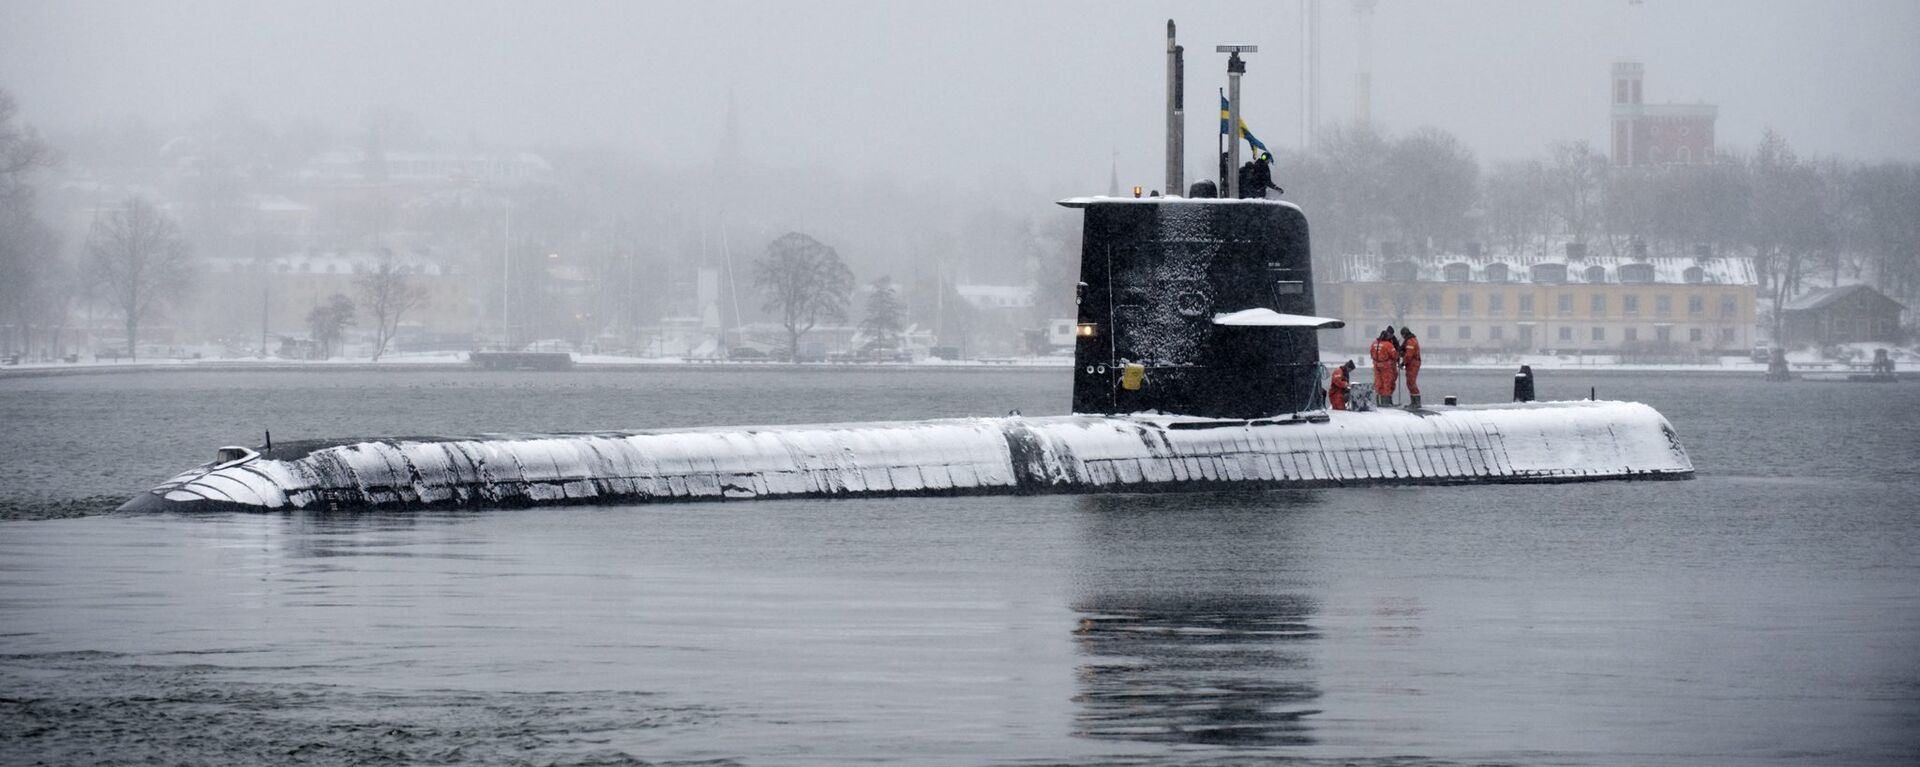 Swedish submarine HMS Halland (File) - Sputnik International, 1920, 20.10.2021